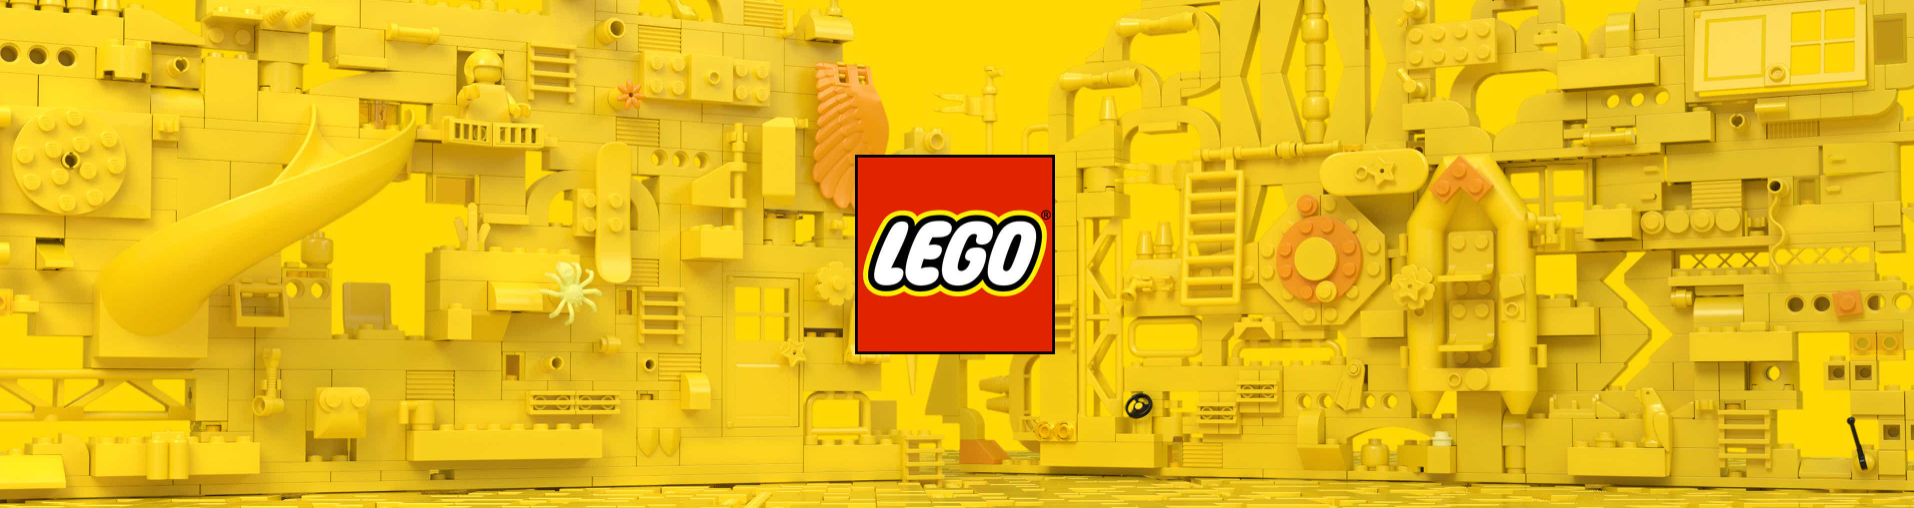 Desde hace más de 100 años Lego ha venido trabajando para posicionarse como una de las principales marcas de juguetes. Hoy es reconocida a nivel global.